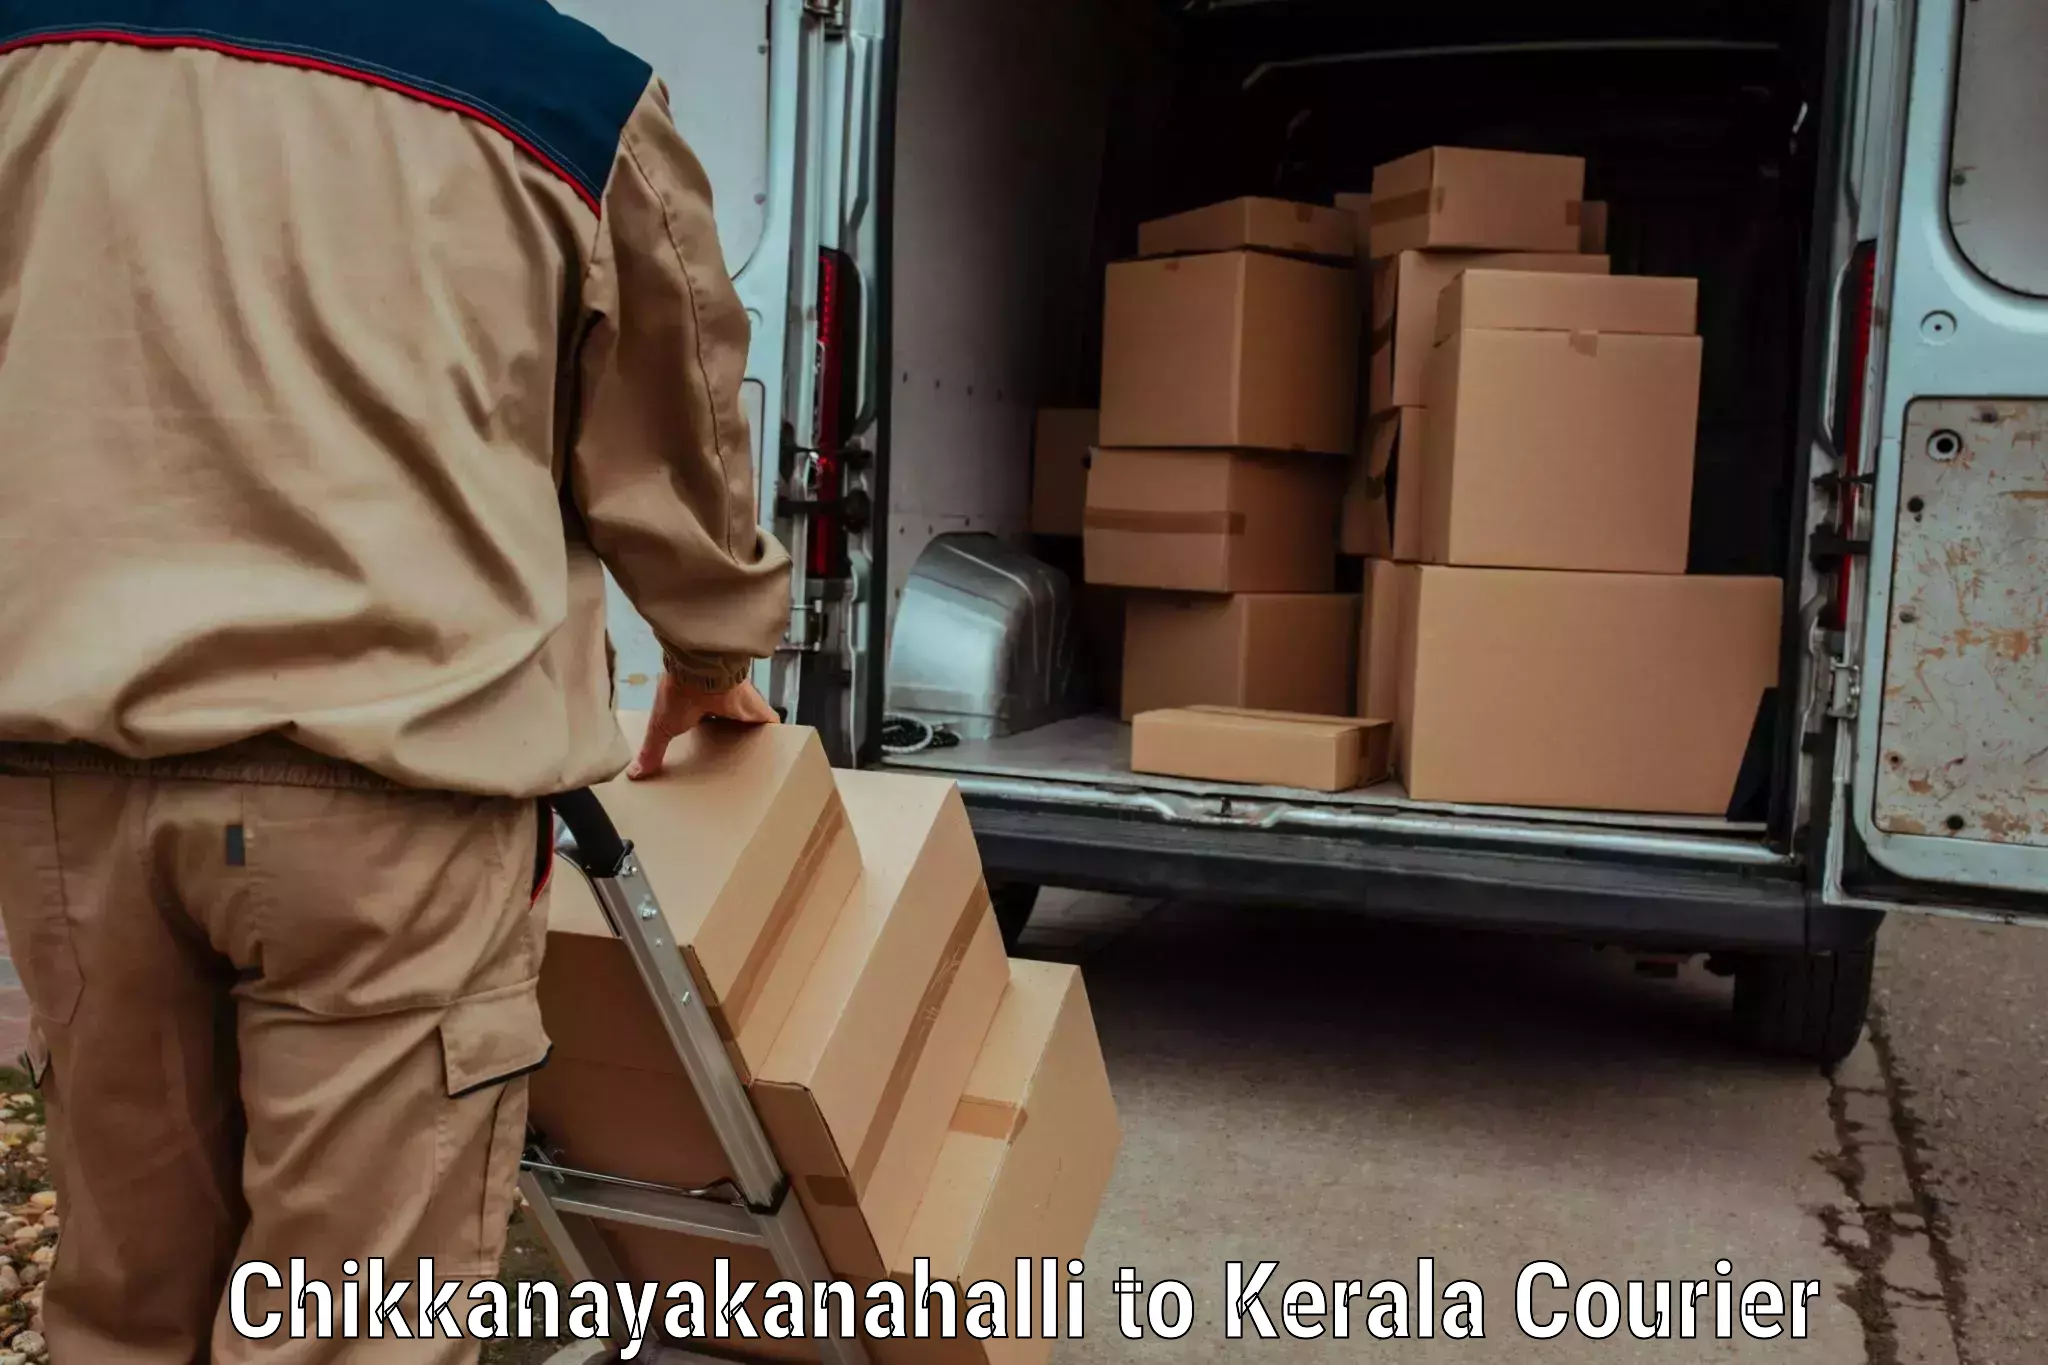 On-call courier service Chikkanayakanahalli to Kuchi